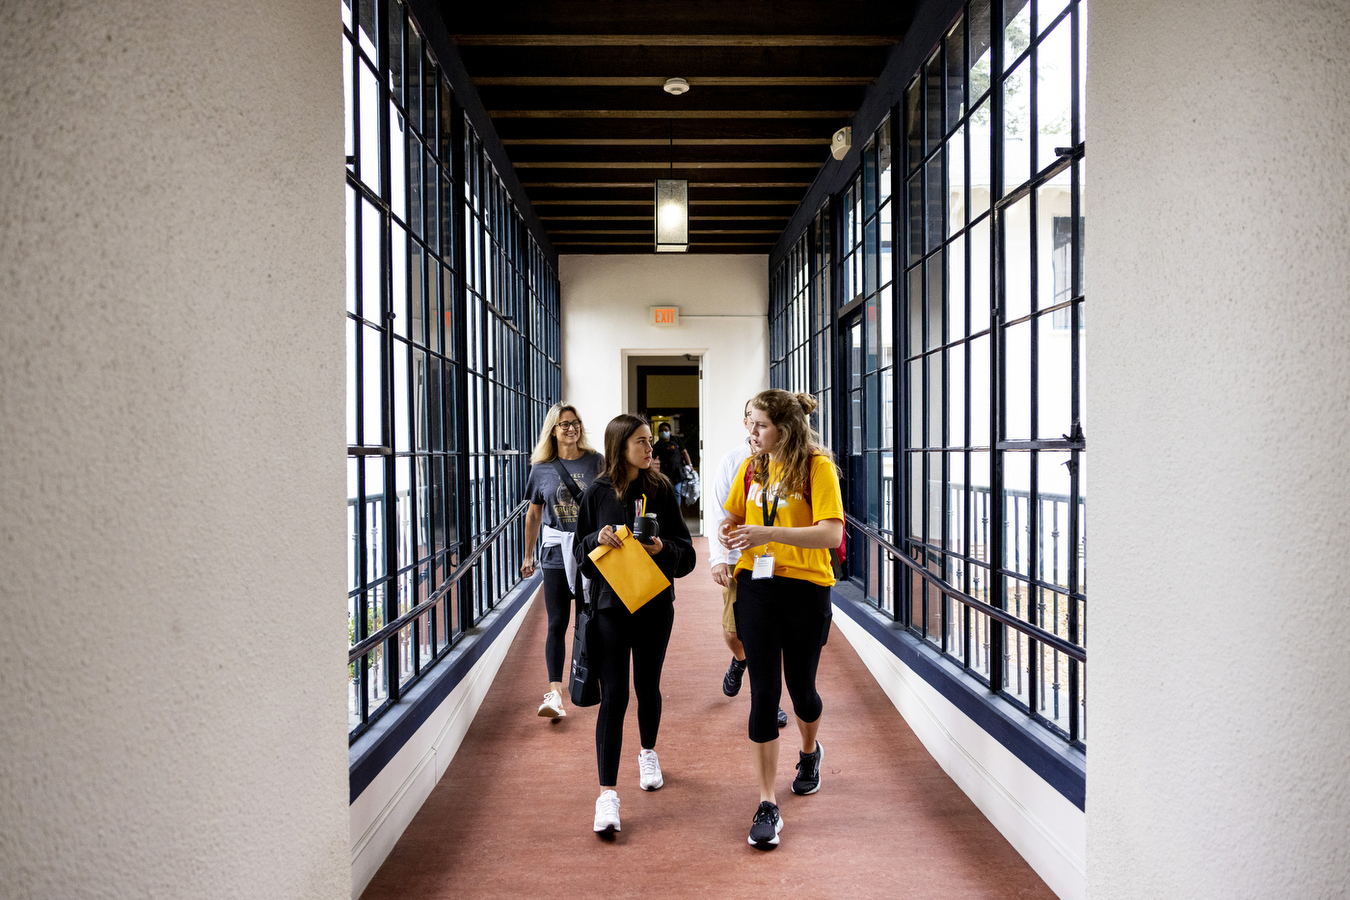 Three students walk down a brightly lit hallway